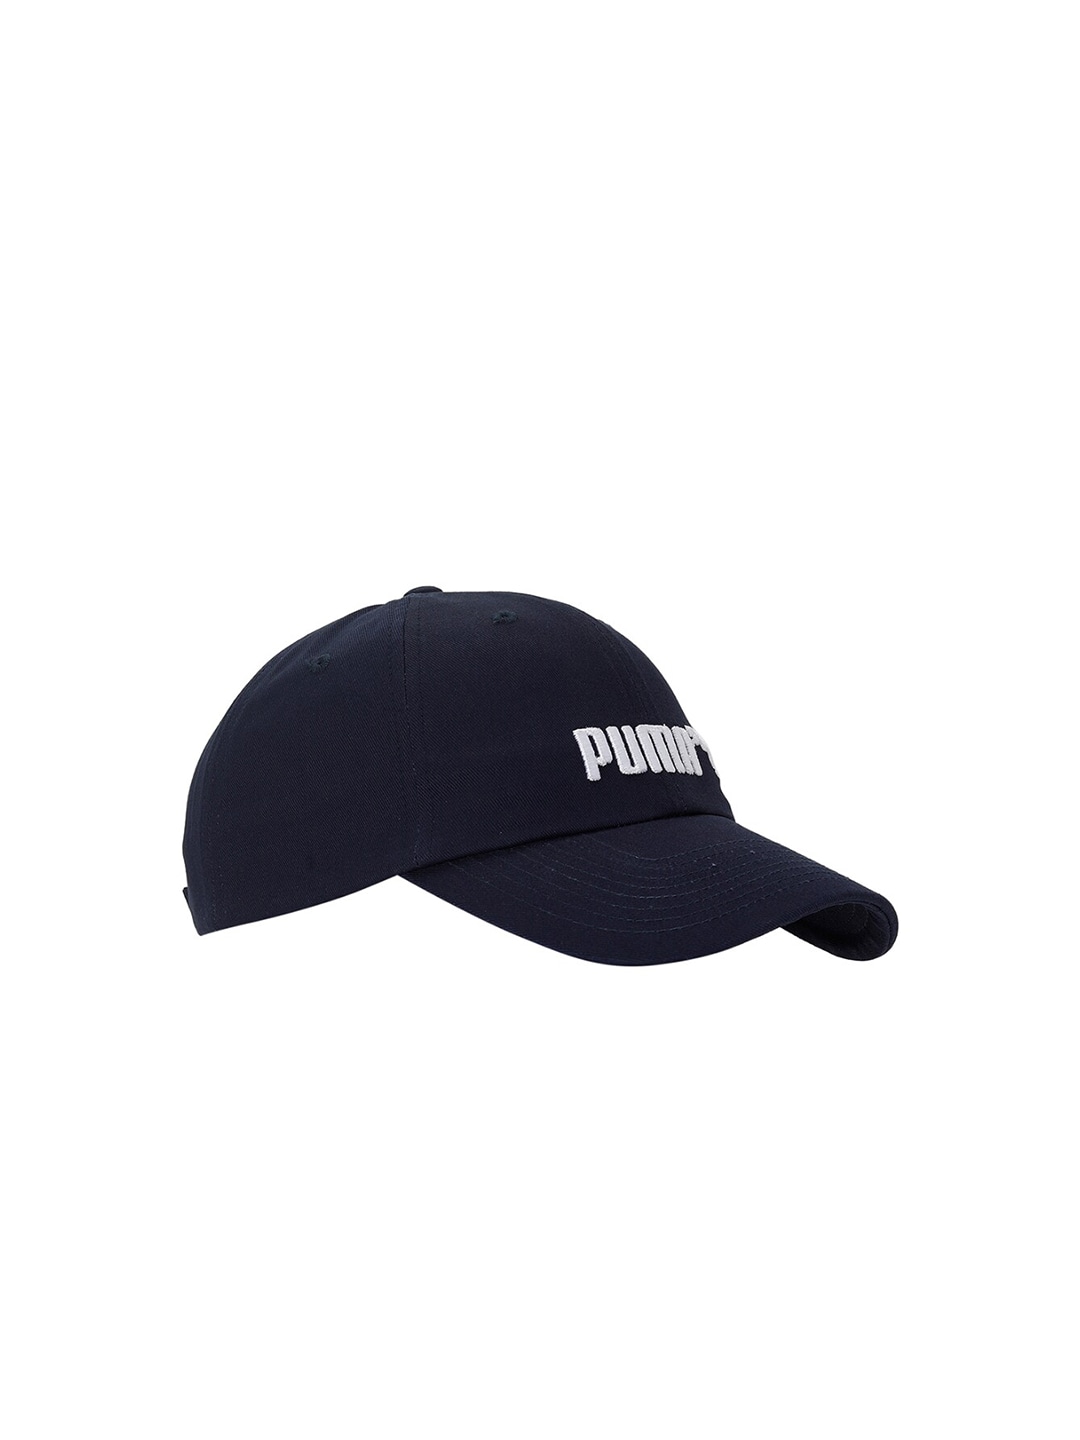 Accessories Caps | Puma Unisex Navy Blue Cotton Essentials No. 2 Logo Baseball Cap - QW19118